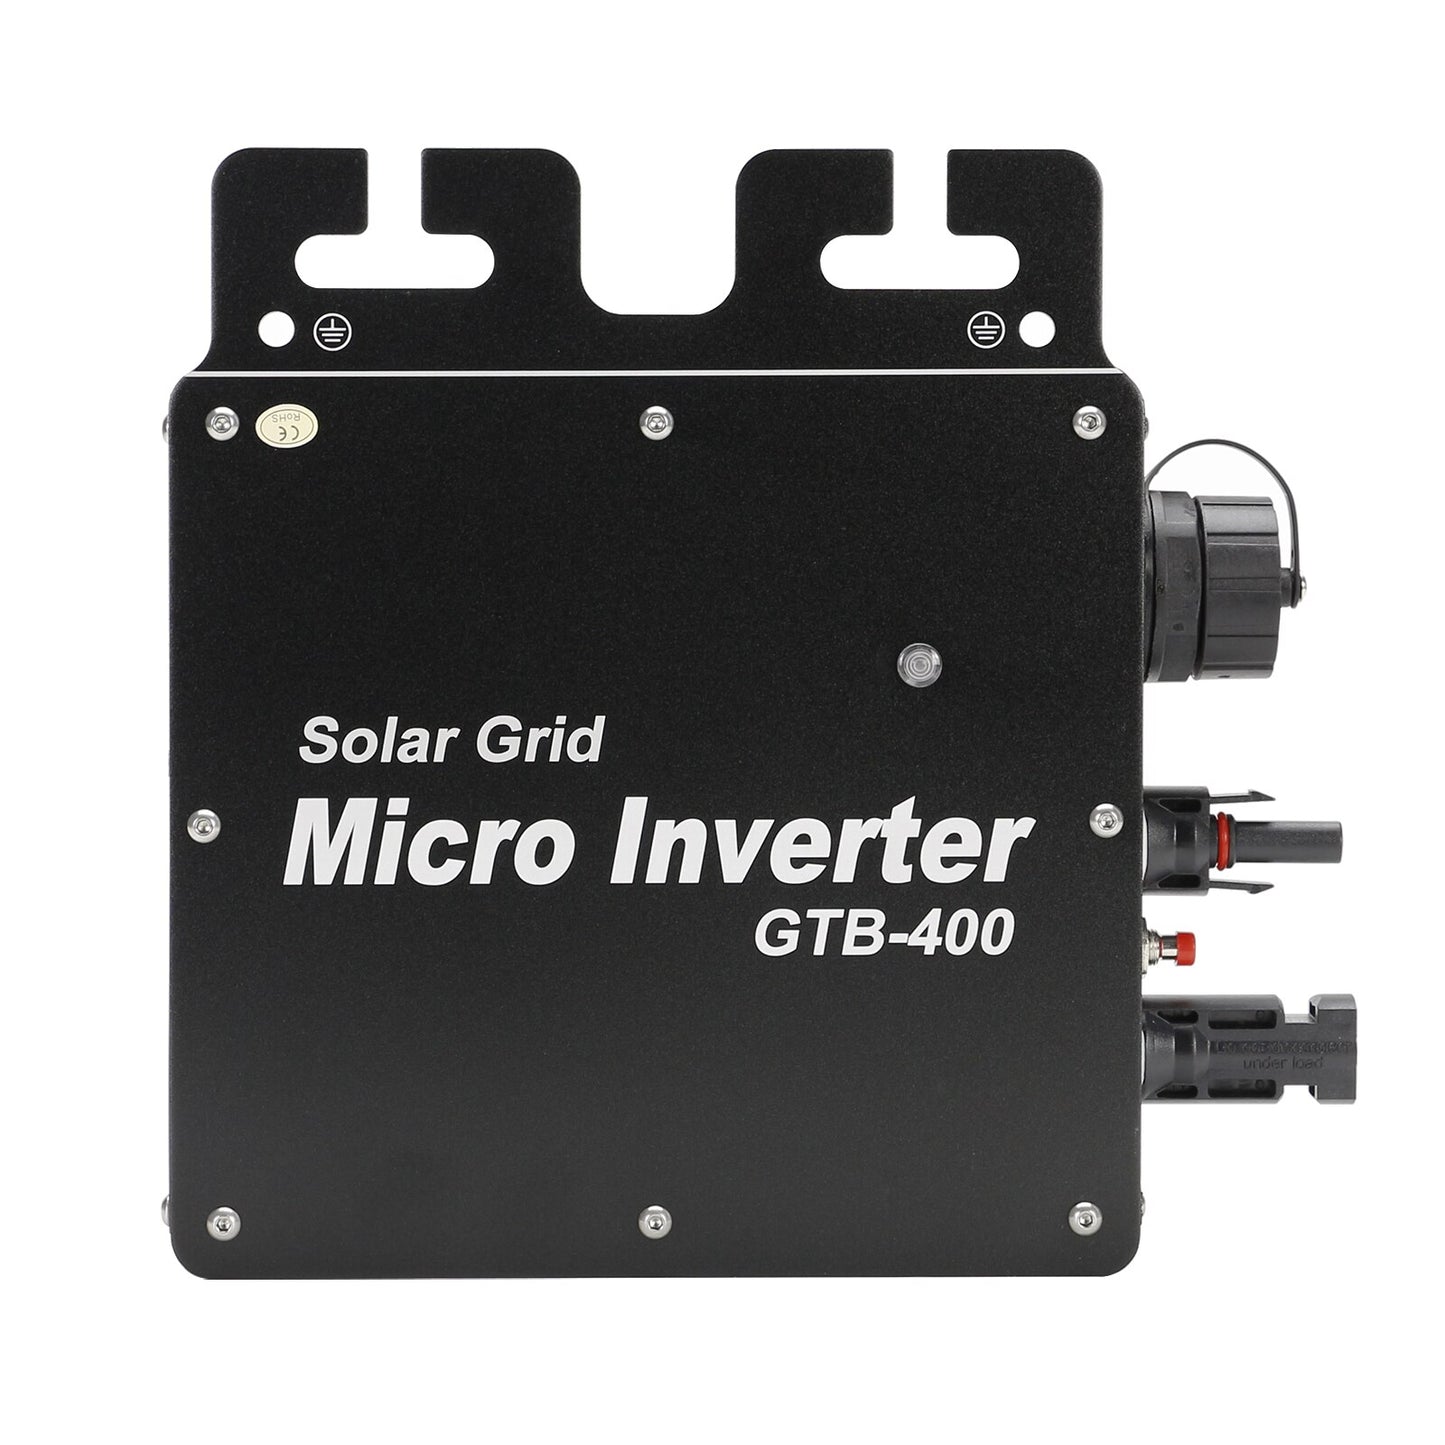 PowMr 400W 600W Micro Inverter Grid Tie Onda Sinusoidale Pura On Grid Micro Inverter Solare 220V Connessione di Rete WiFi IP65 Impermeabile